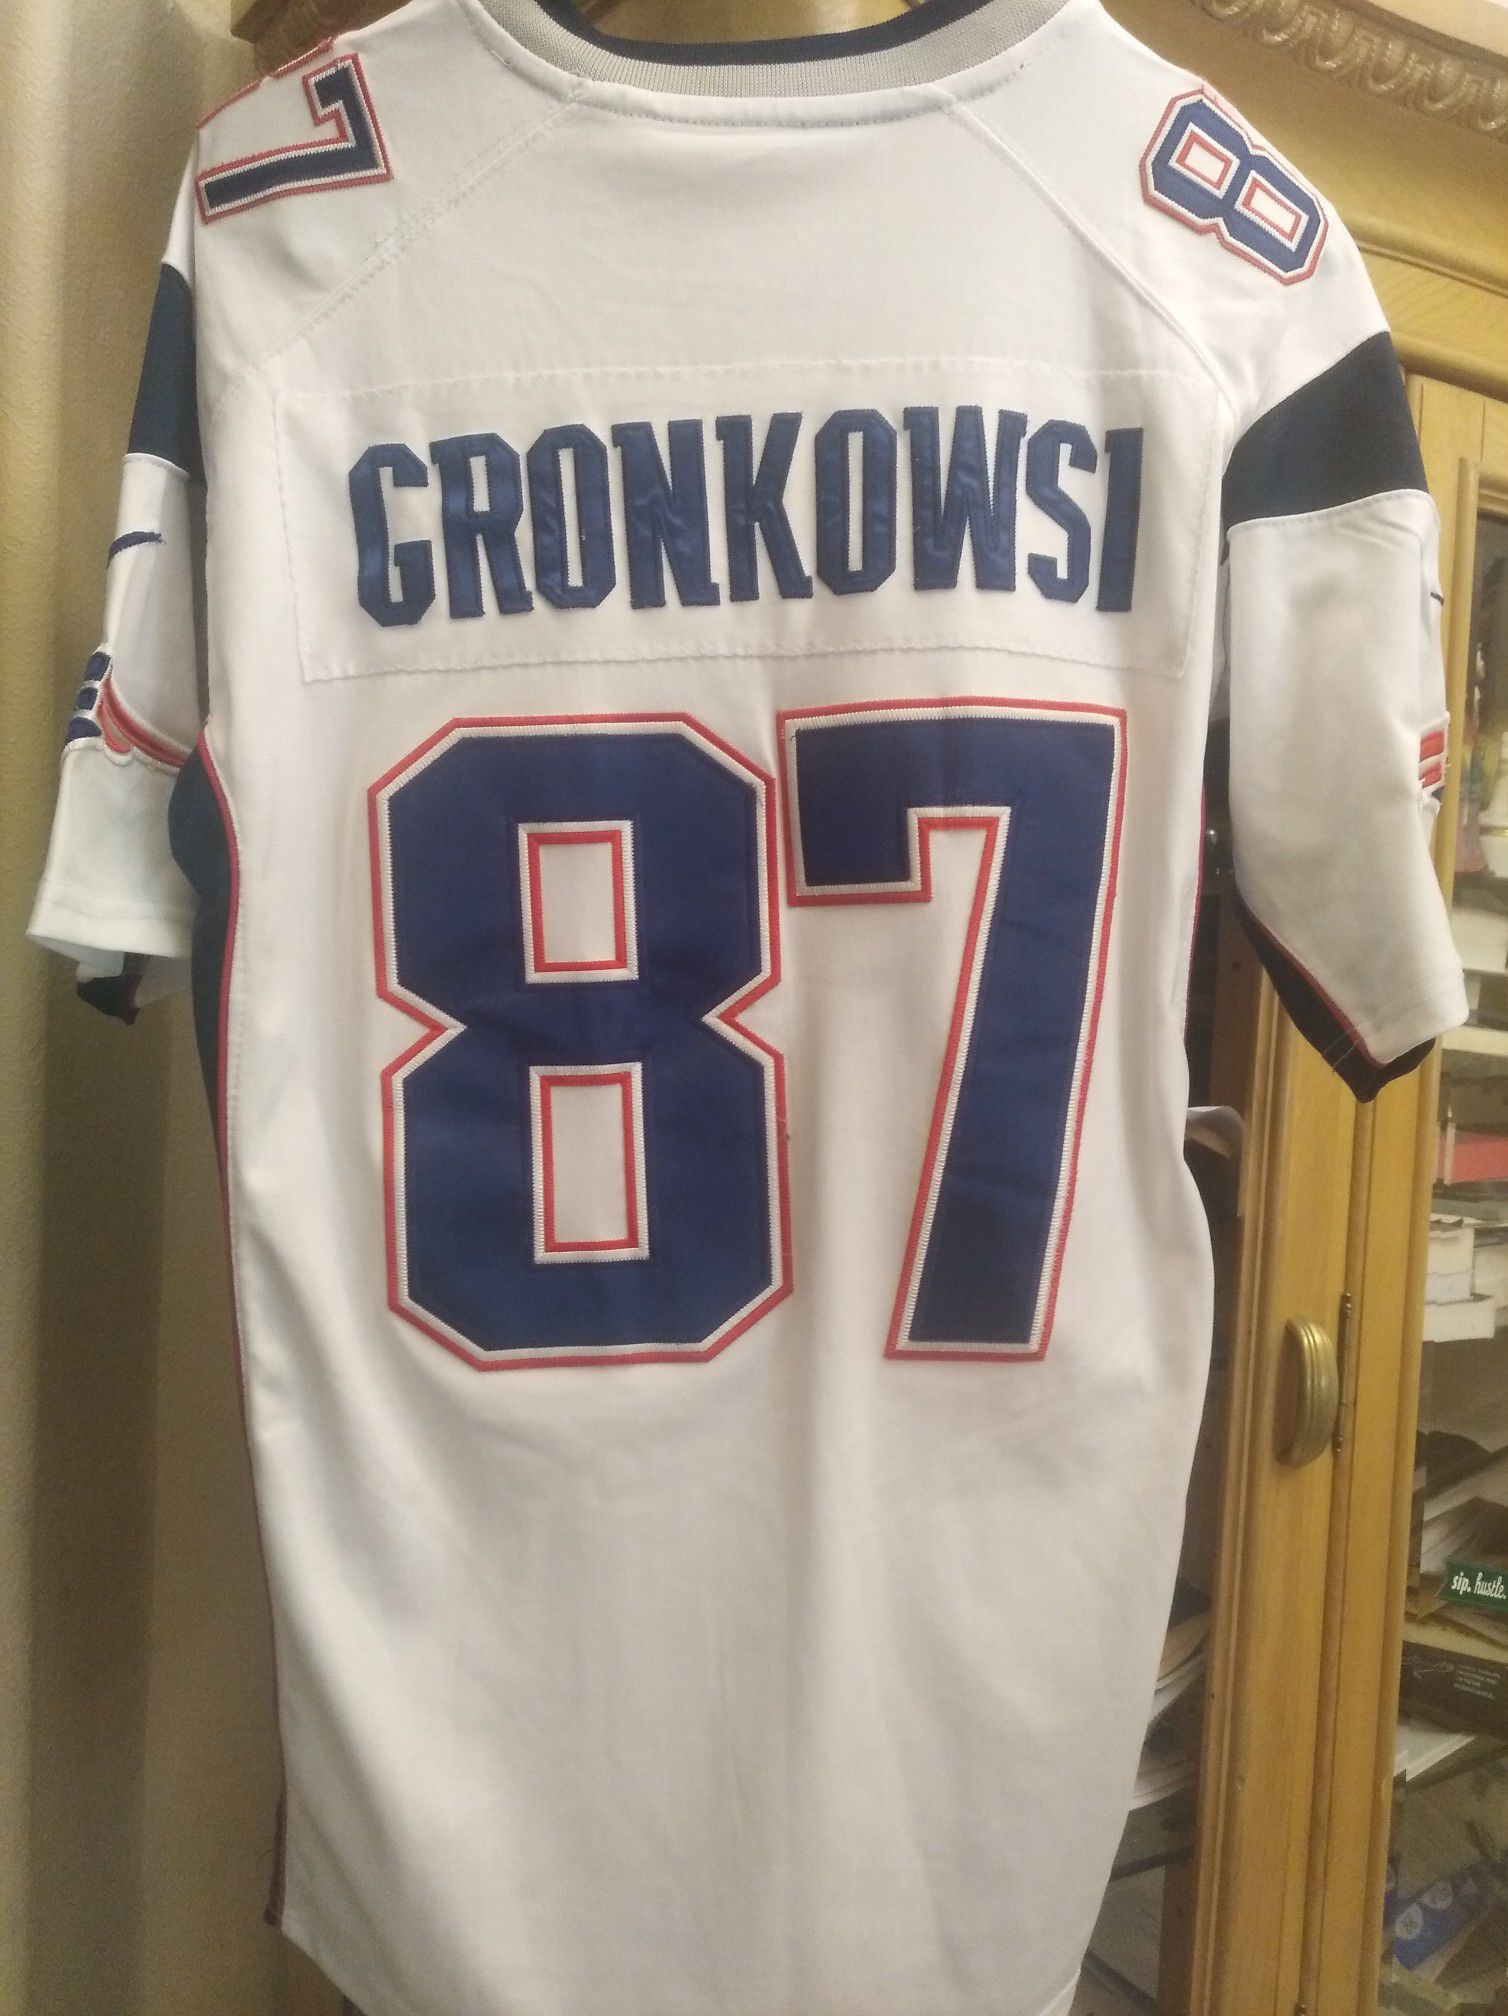 Patriots Jersey Gronkowsi